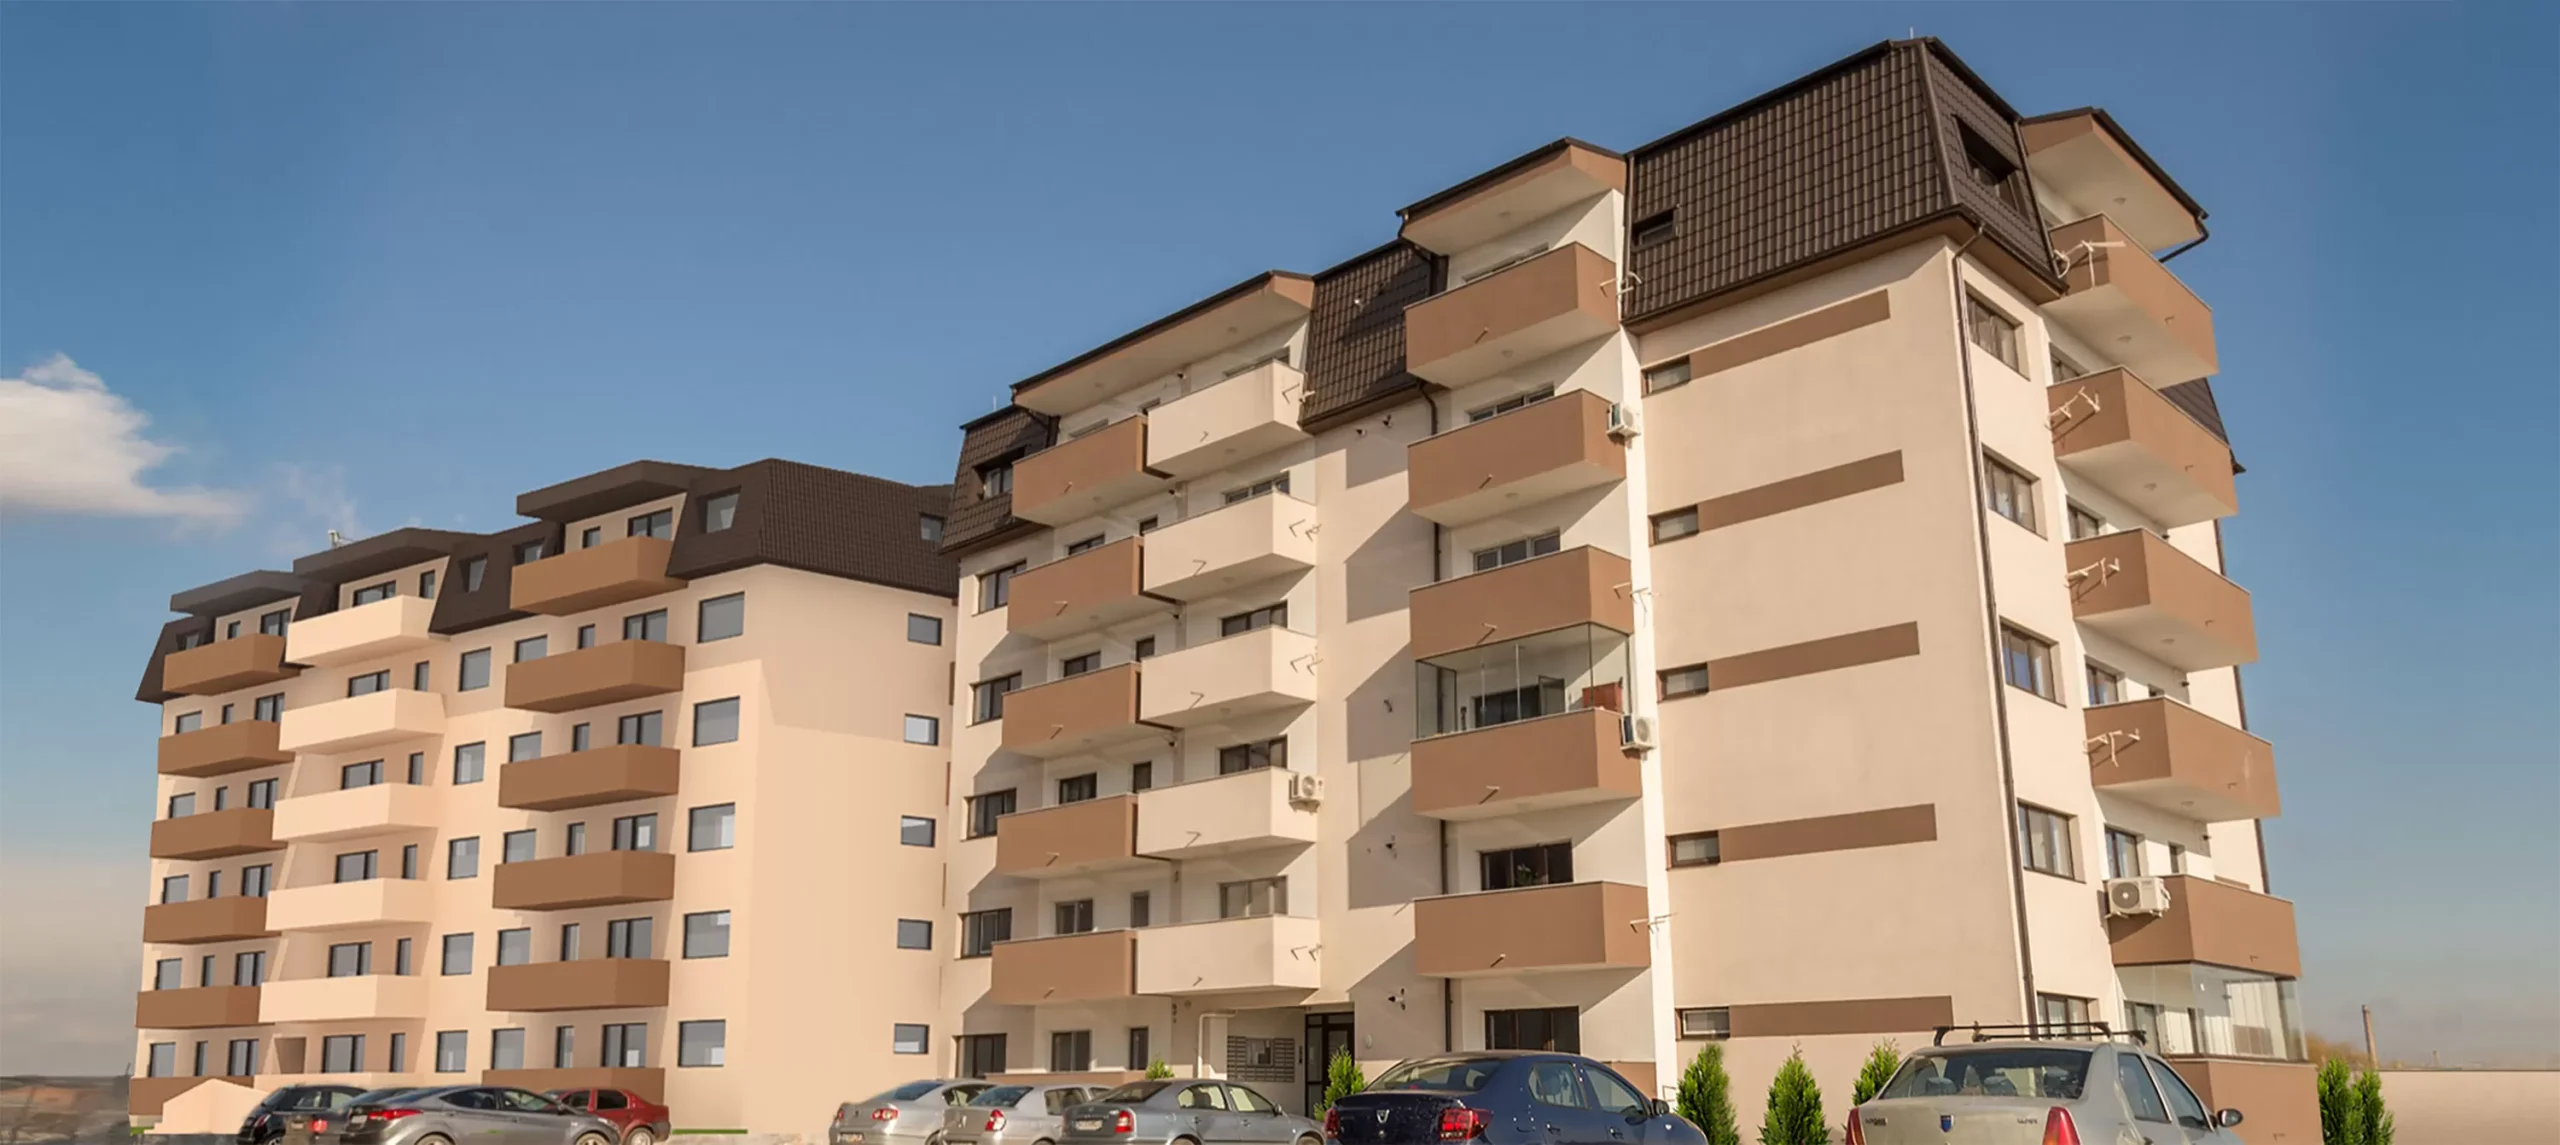 Apartamente noi în Pantelimon: Locuințe moderne pentru familii moderne